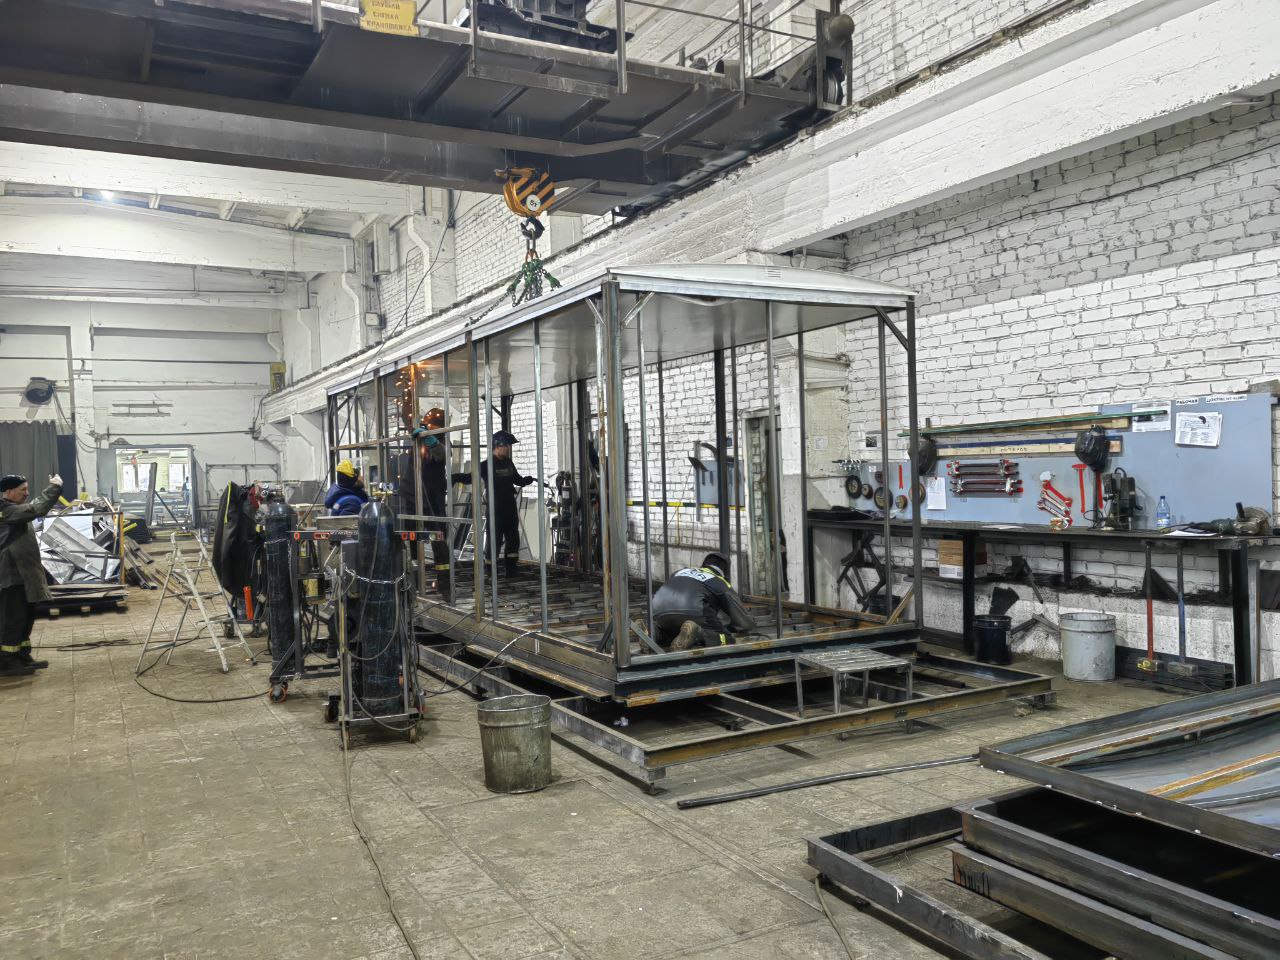 Железногорская компания оптимизировала производство вагон-домов благодаря участию в нацпроекте «Производительность труда».